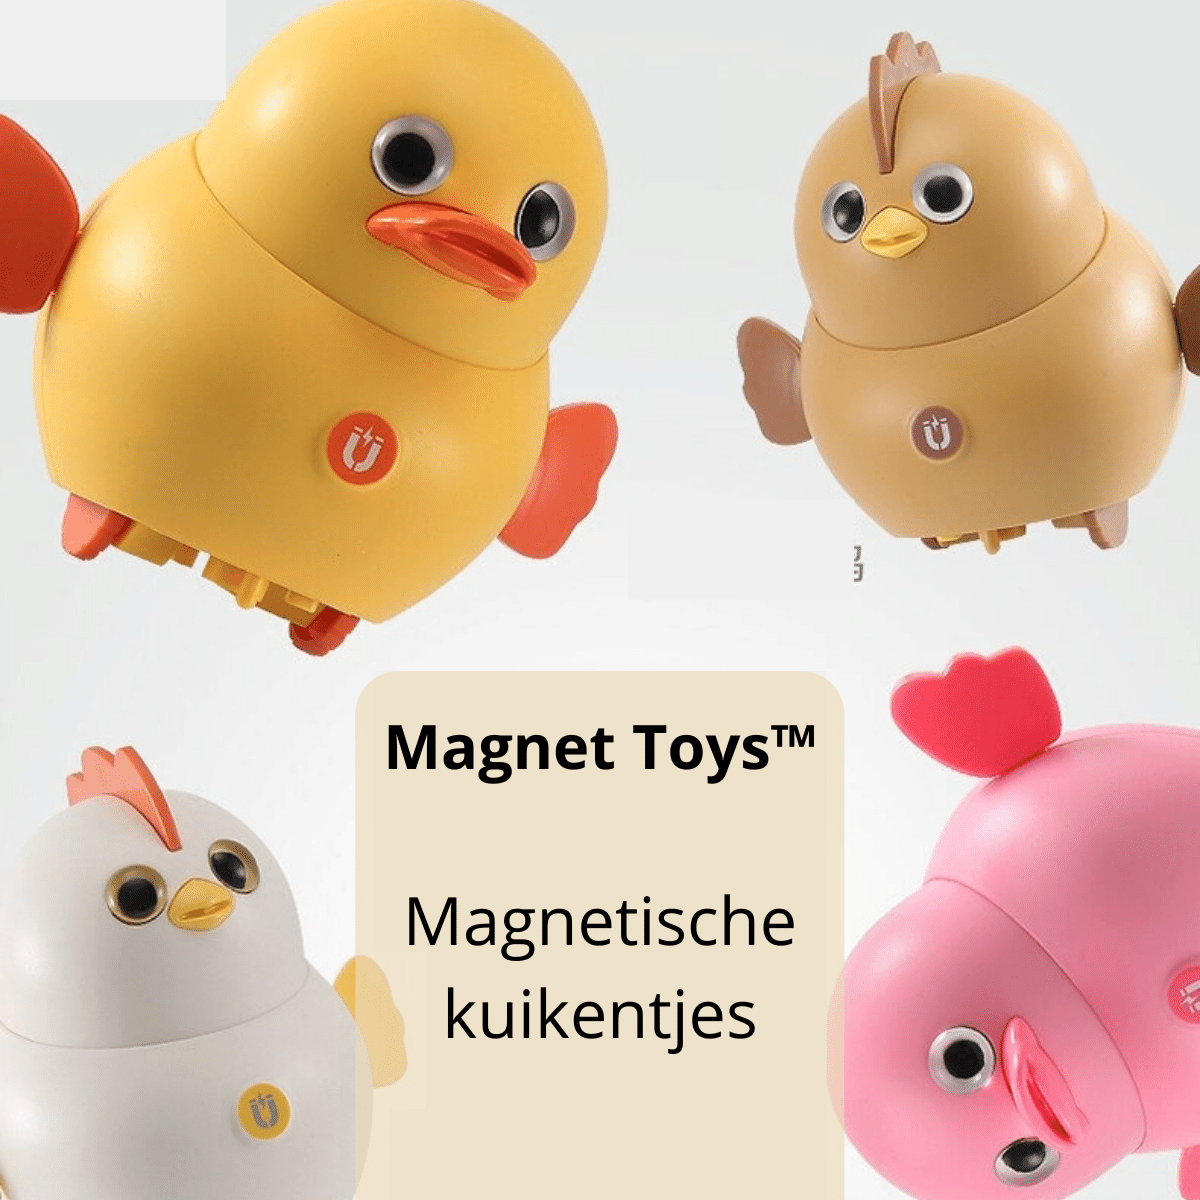 Magnet Toys™ | Udvikle færdighederne - Dyrenes vandring